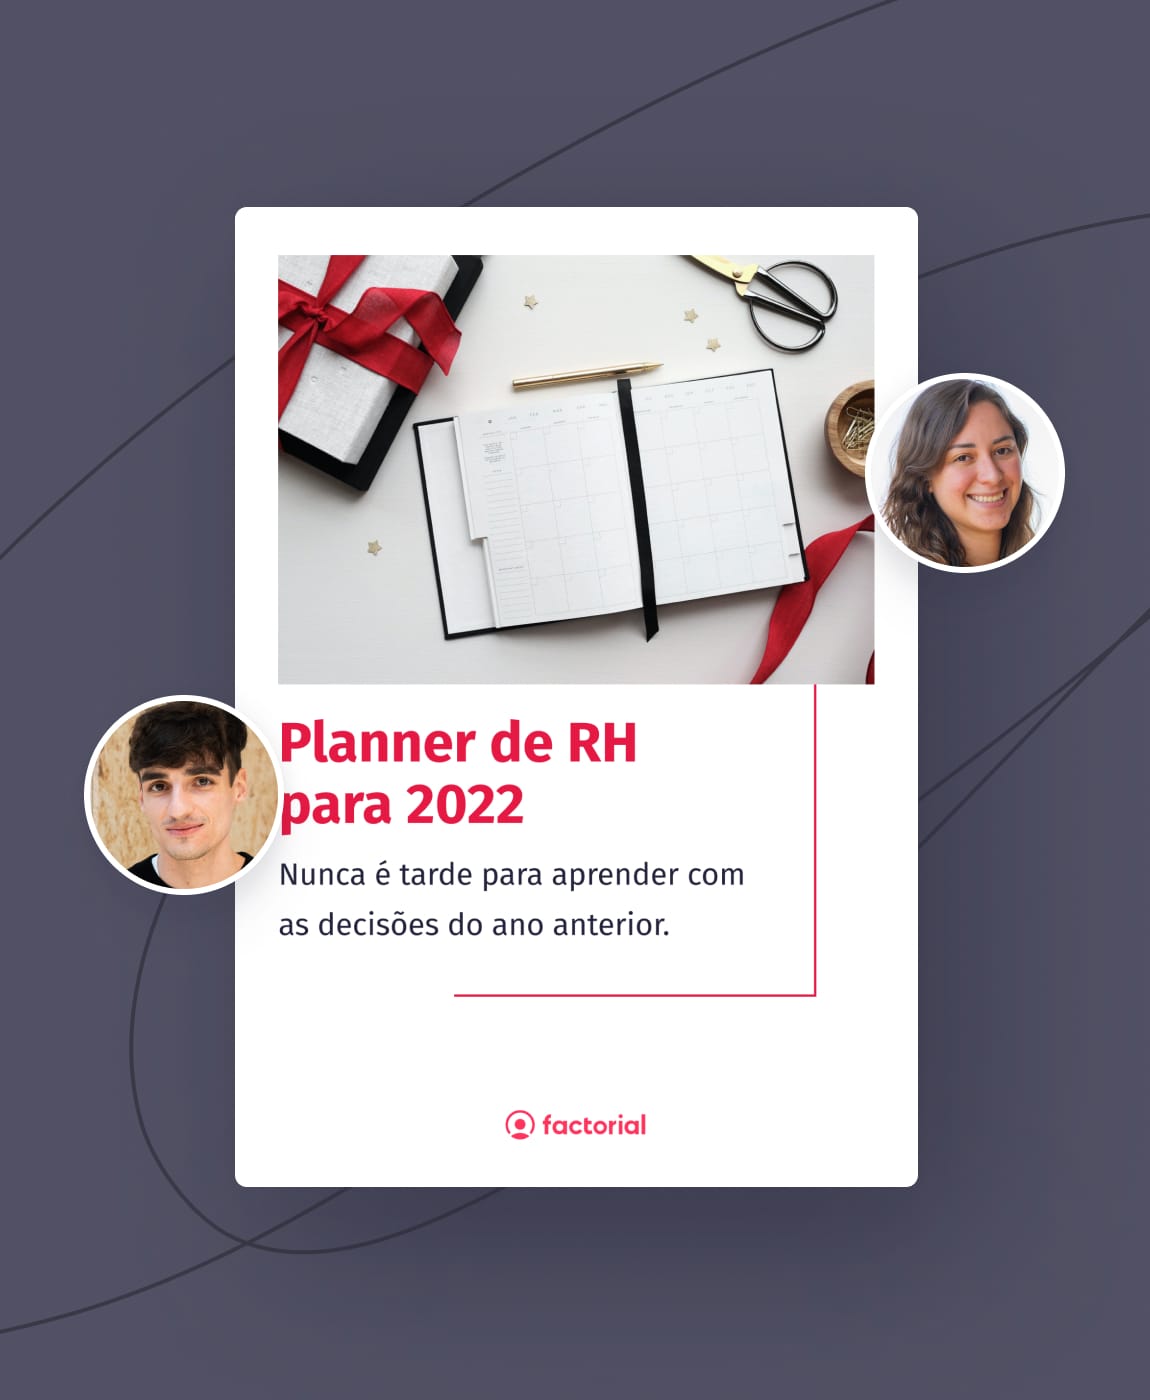 Planner de RH para 2022